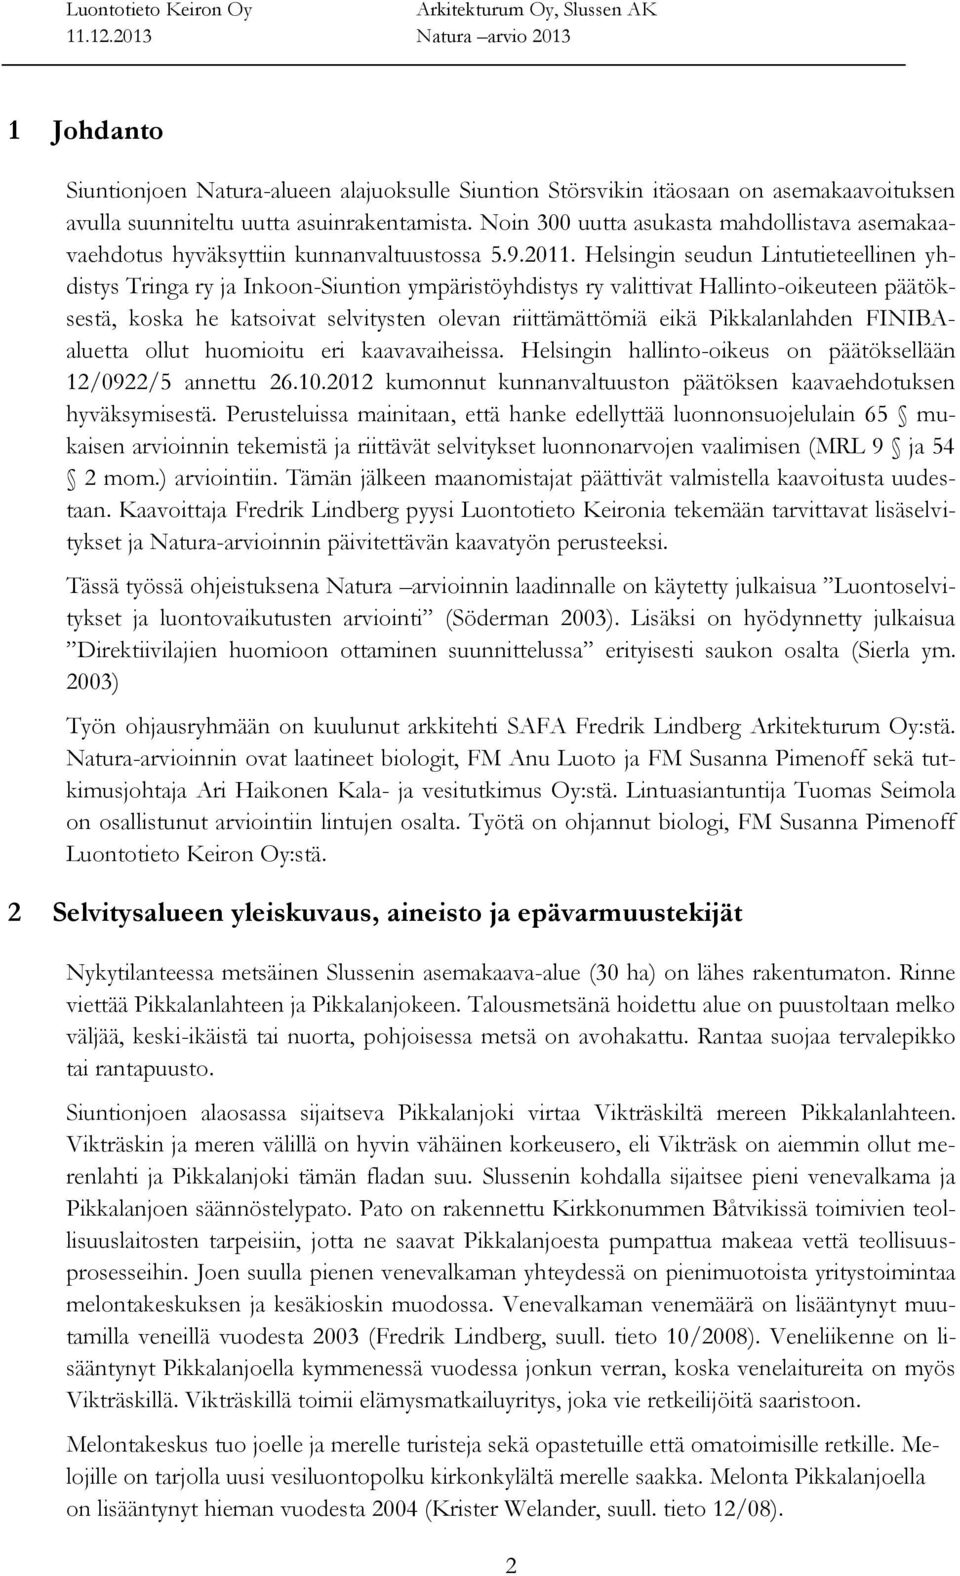 Helsingin seudun Lintutieteellinen yhdistys Tringa ry ja Inkoon-Siuntion ympäristöyhdistys ry valittivat Hallinto-oikeuteen päätöksestä, koska he katsoivat selvitysten olevan riittämättömiä eikä